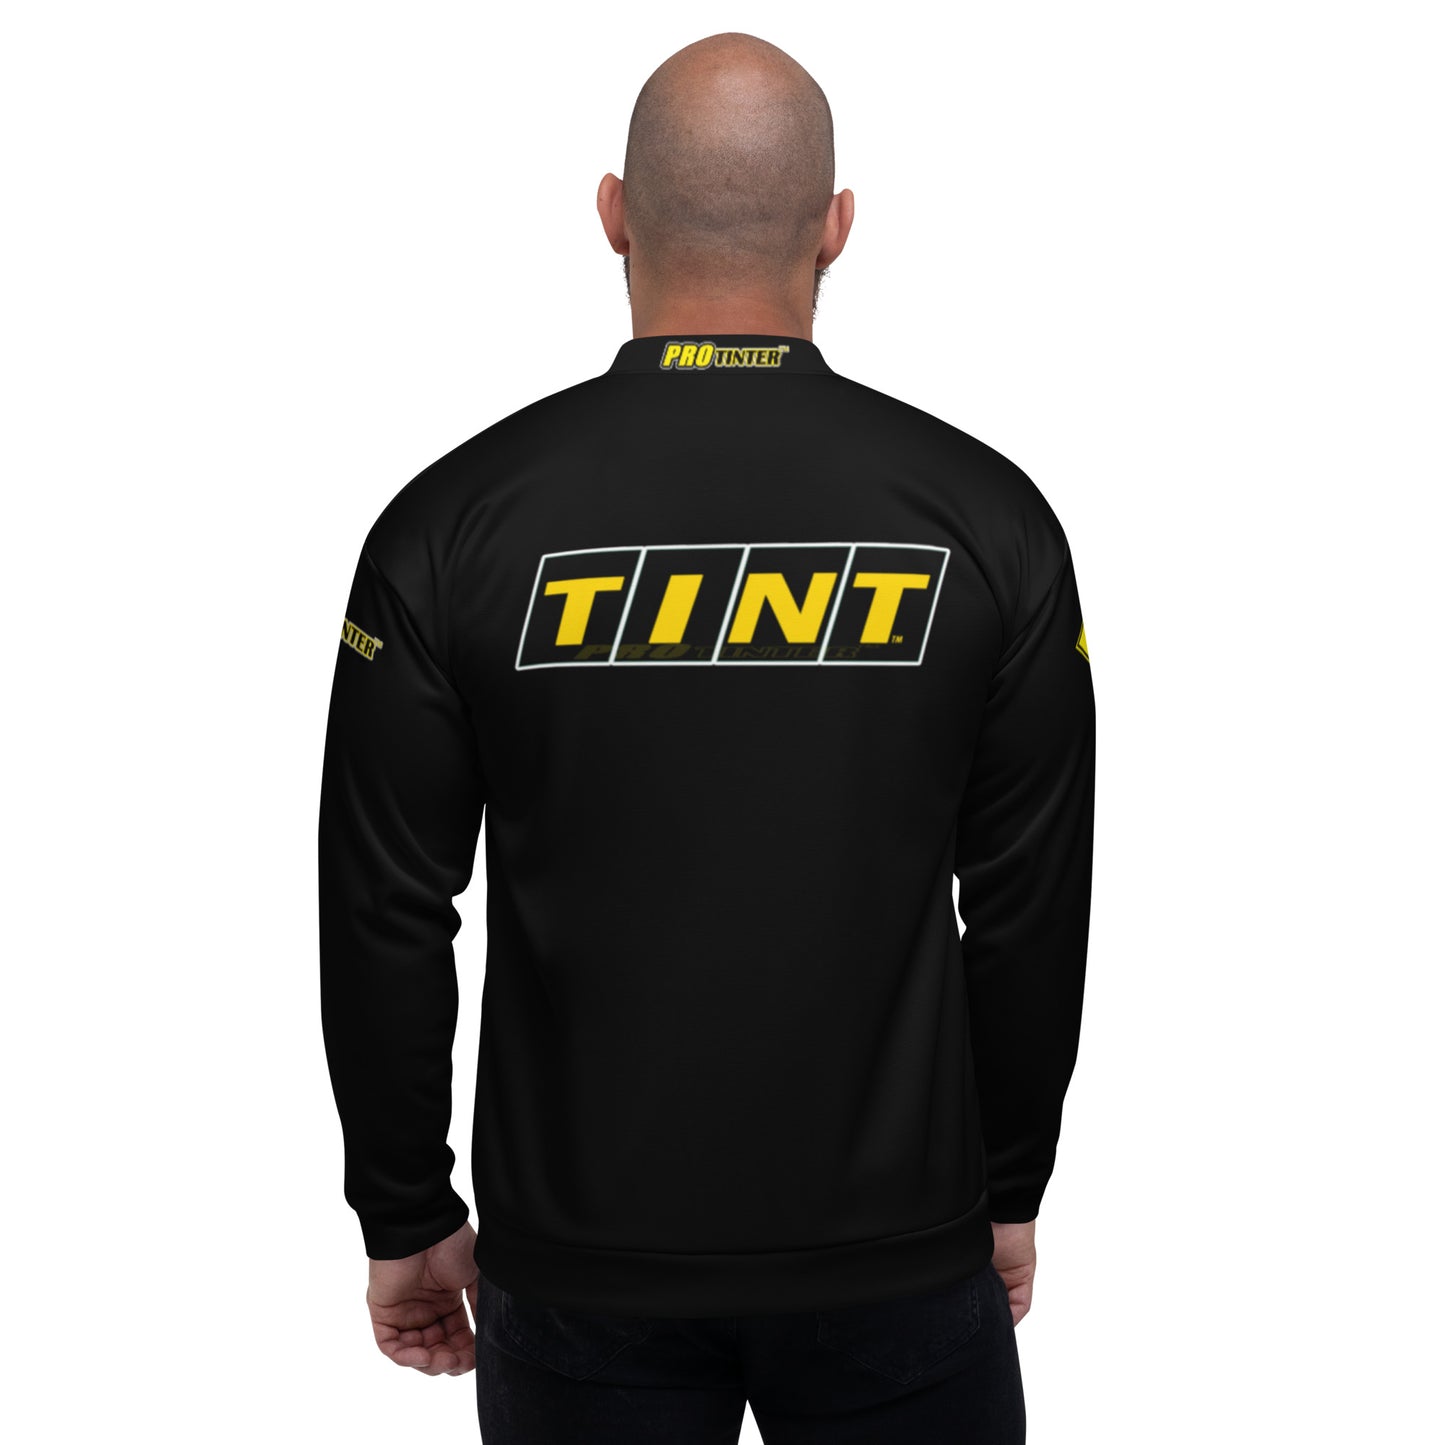 TINT with OLFA by Pro Tinter (Black) Unisex Bomber Jacket